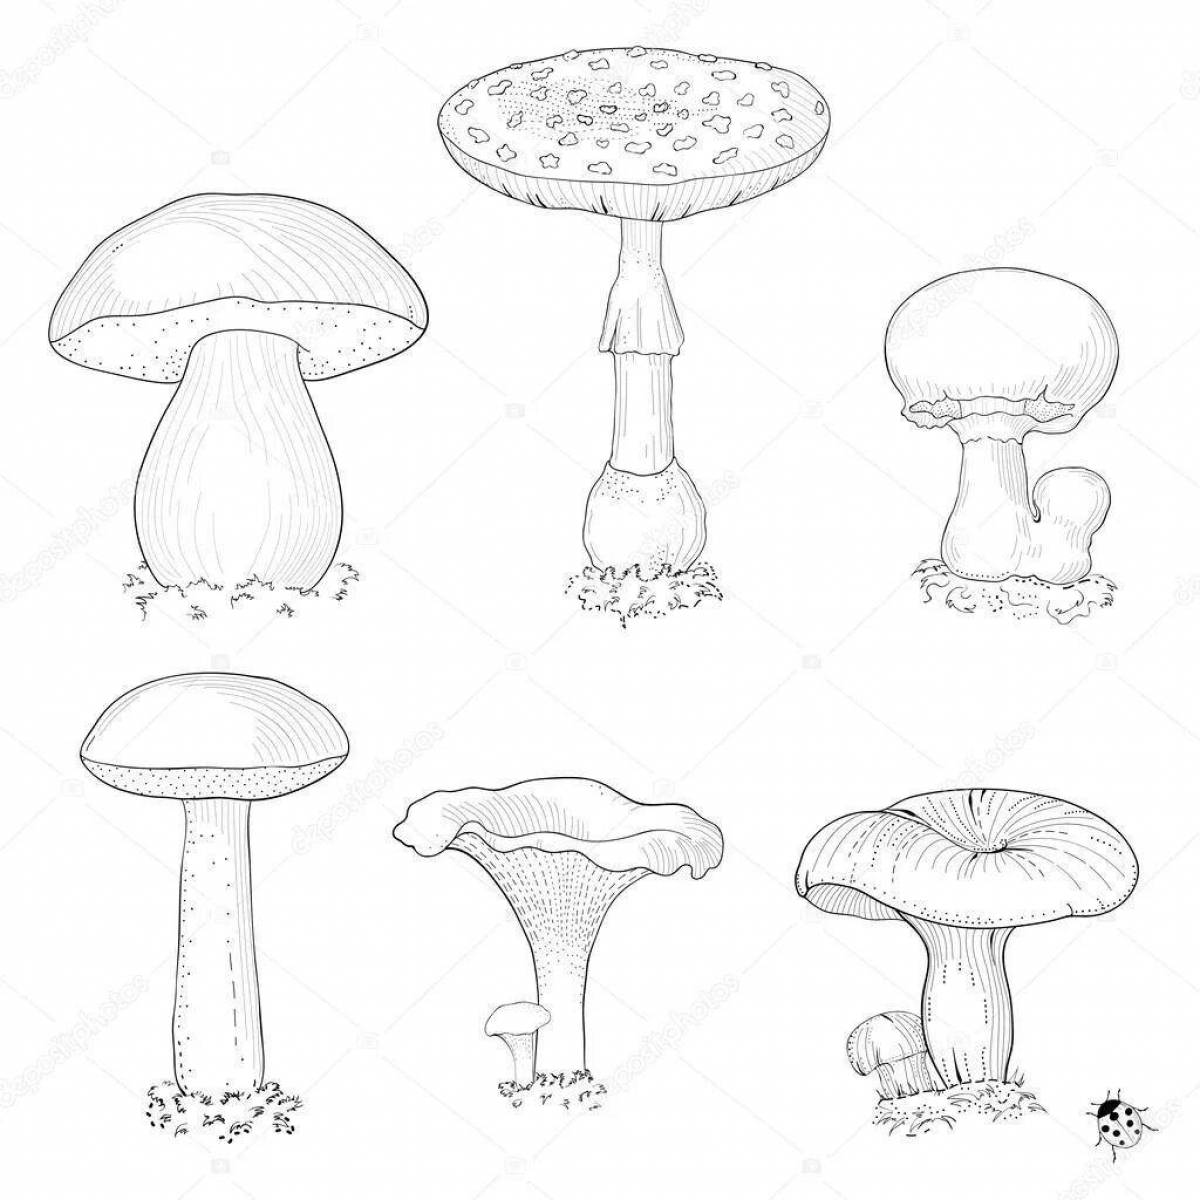 Съедобные и несъедобные грибы карандашом